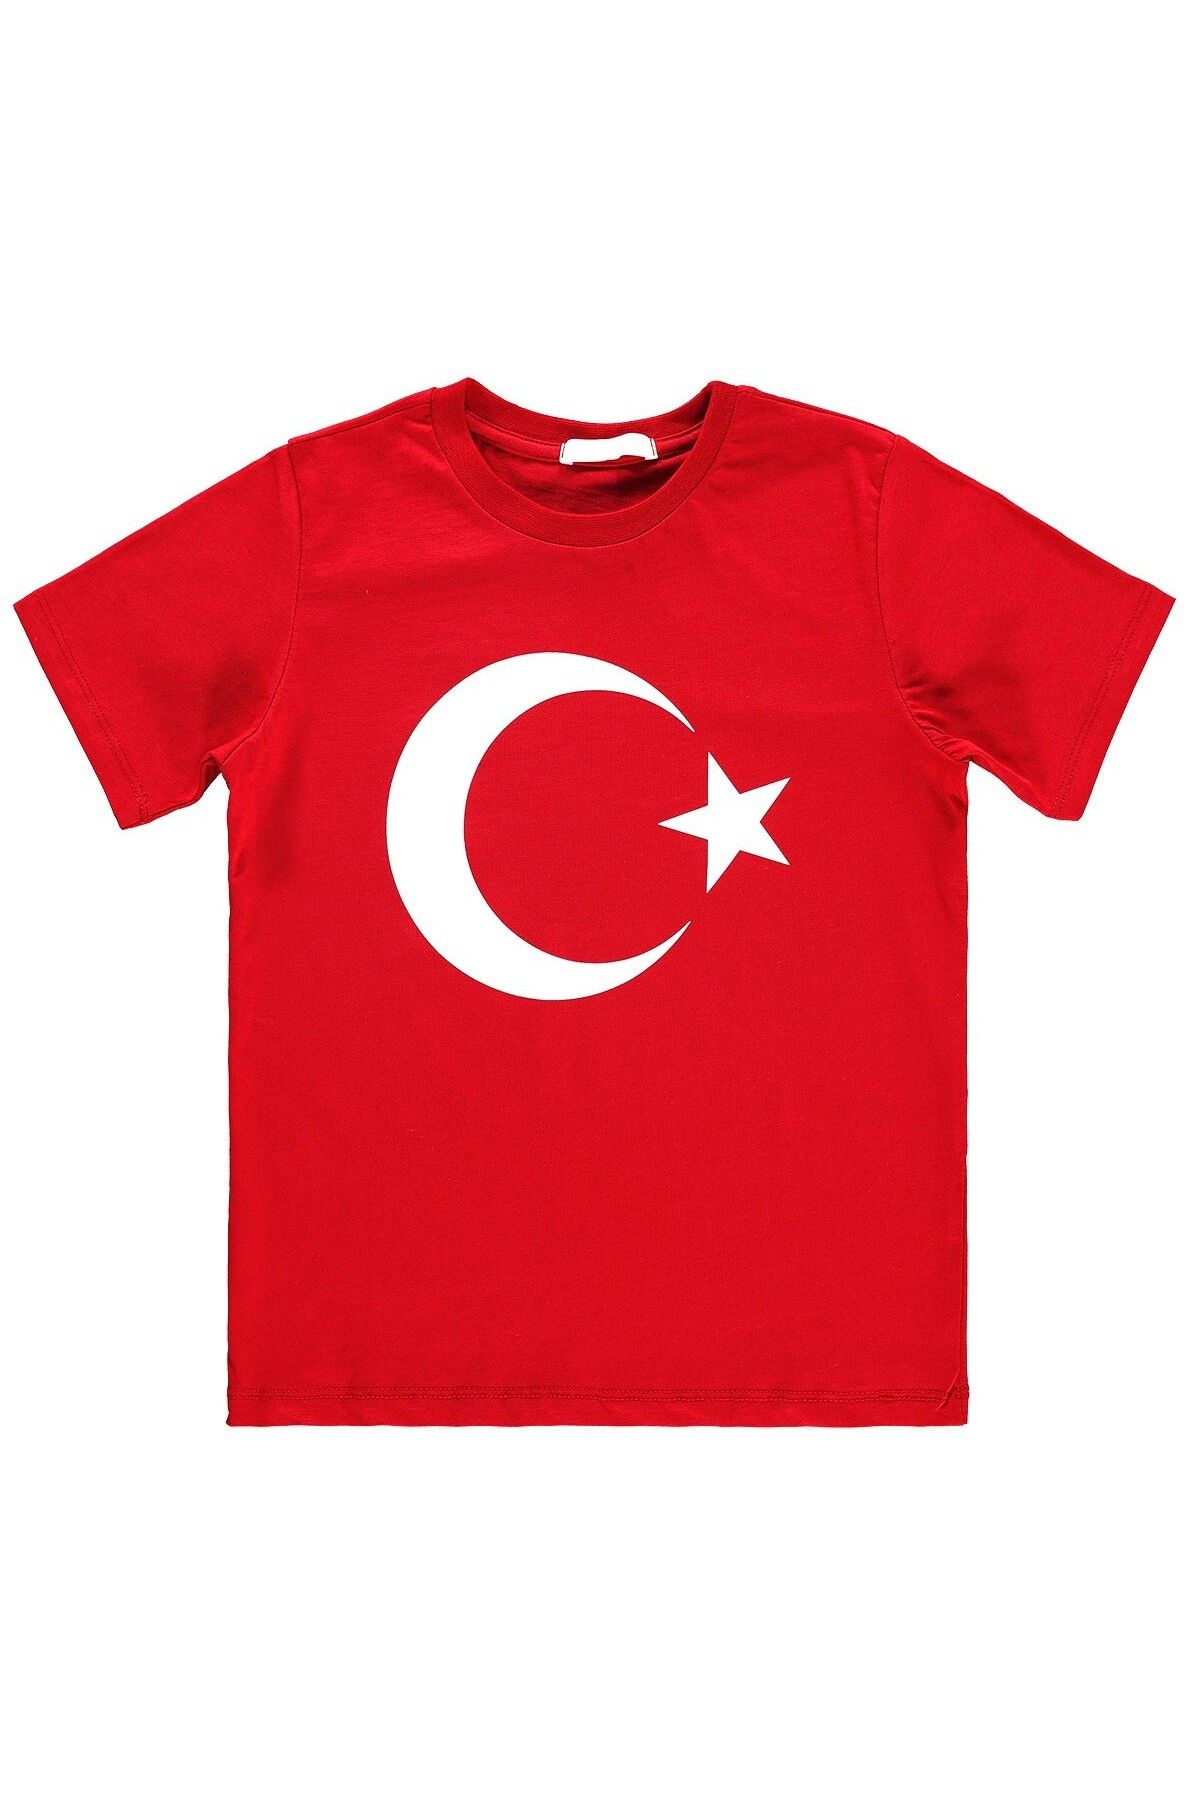 LUSANA 5-15 Yaş Türk Bayraklı Yazlık Tshirt - 23 Nisan Tshirt - 29 Ekim Tshirt